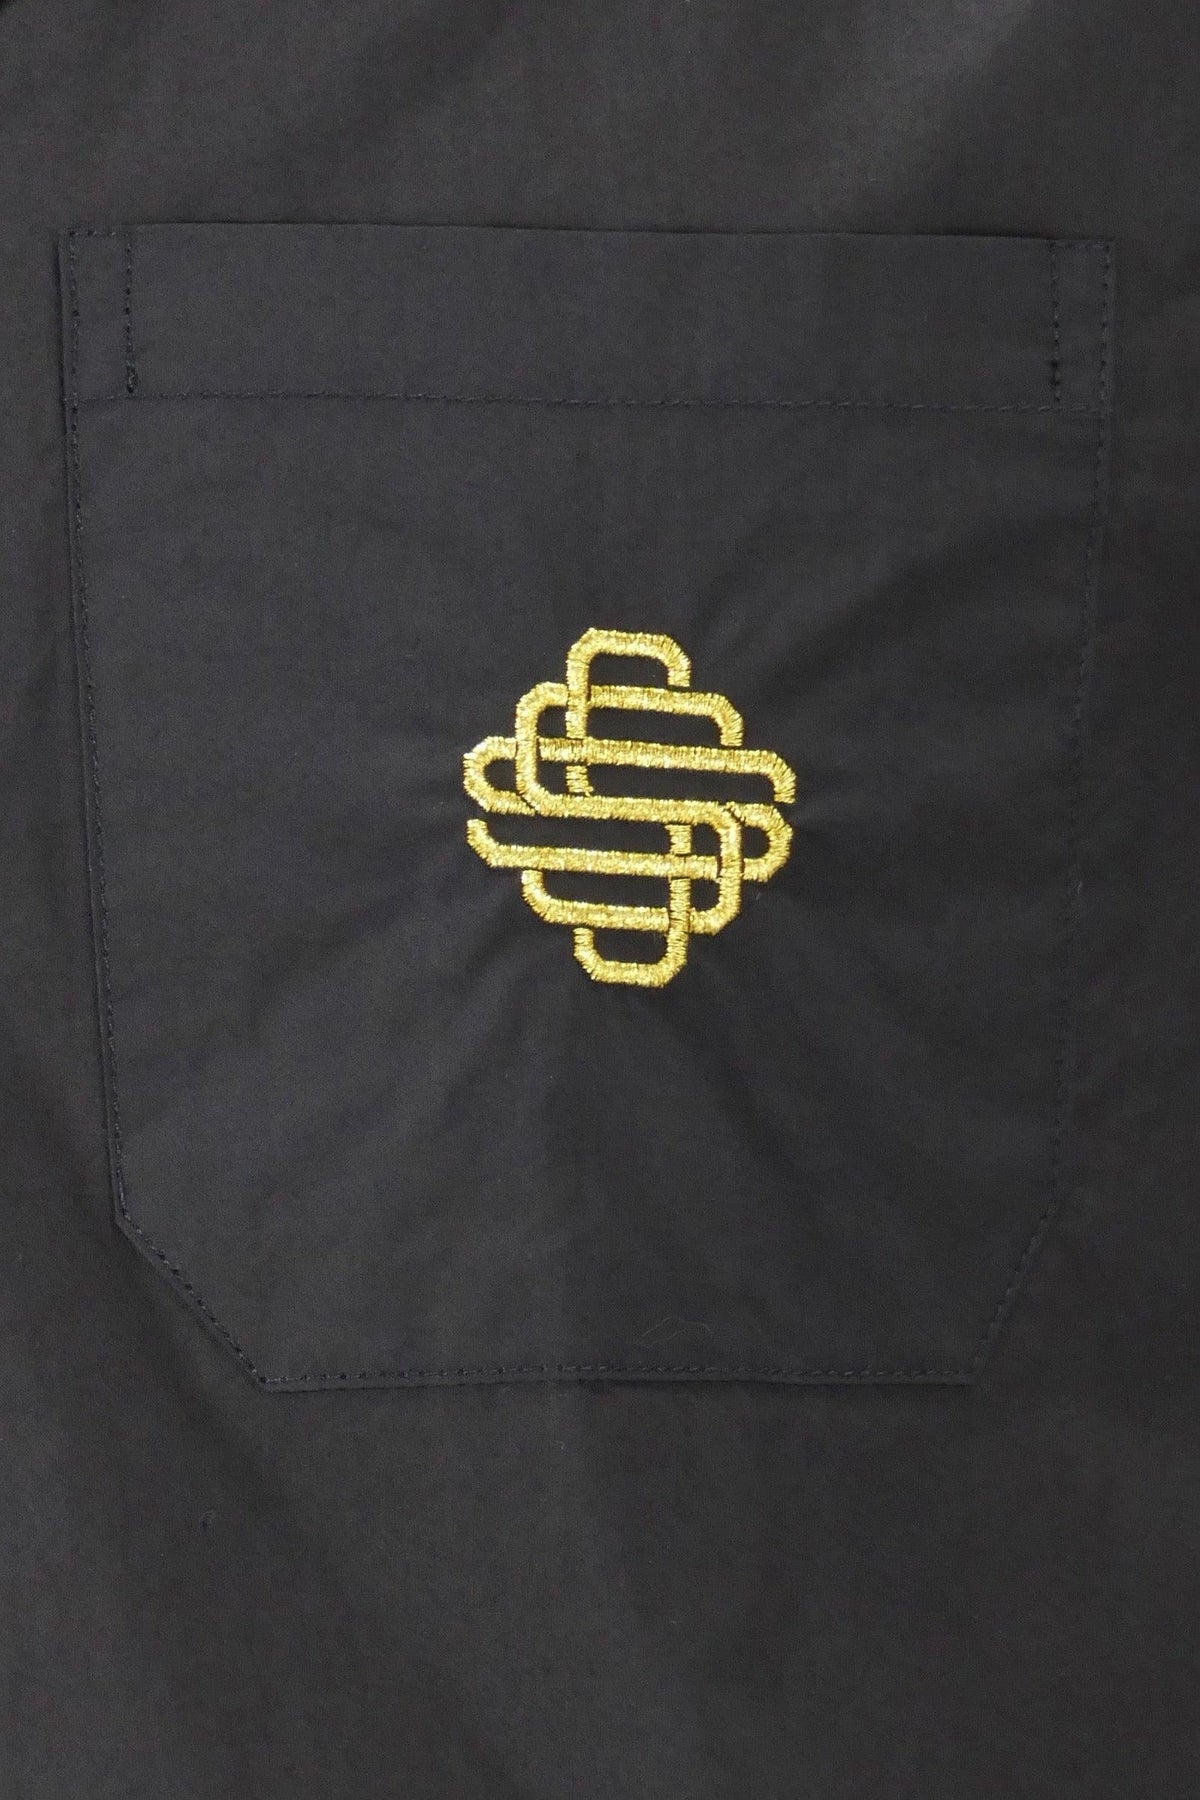 SSS World Corp Cuban Short Sleeve Shirt - Black - Due West